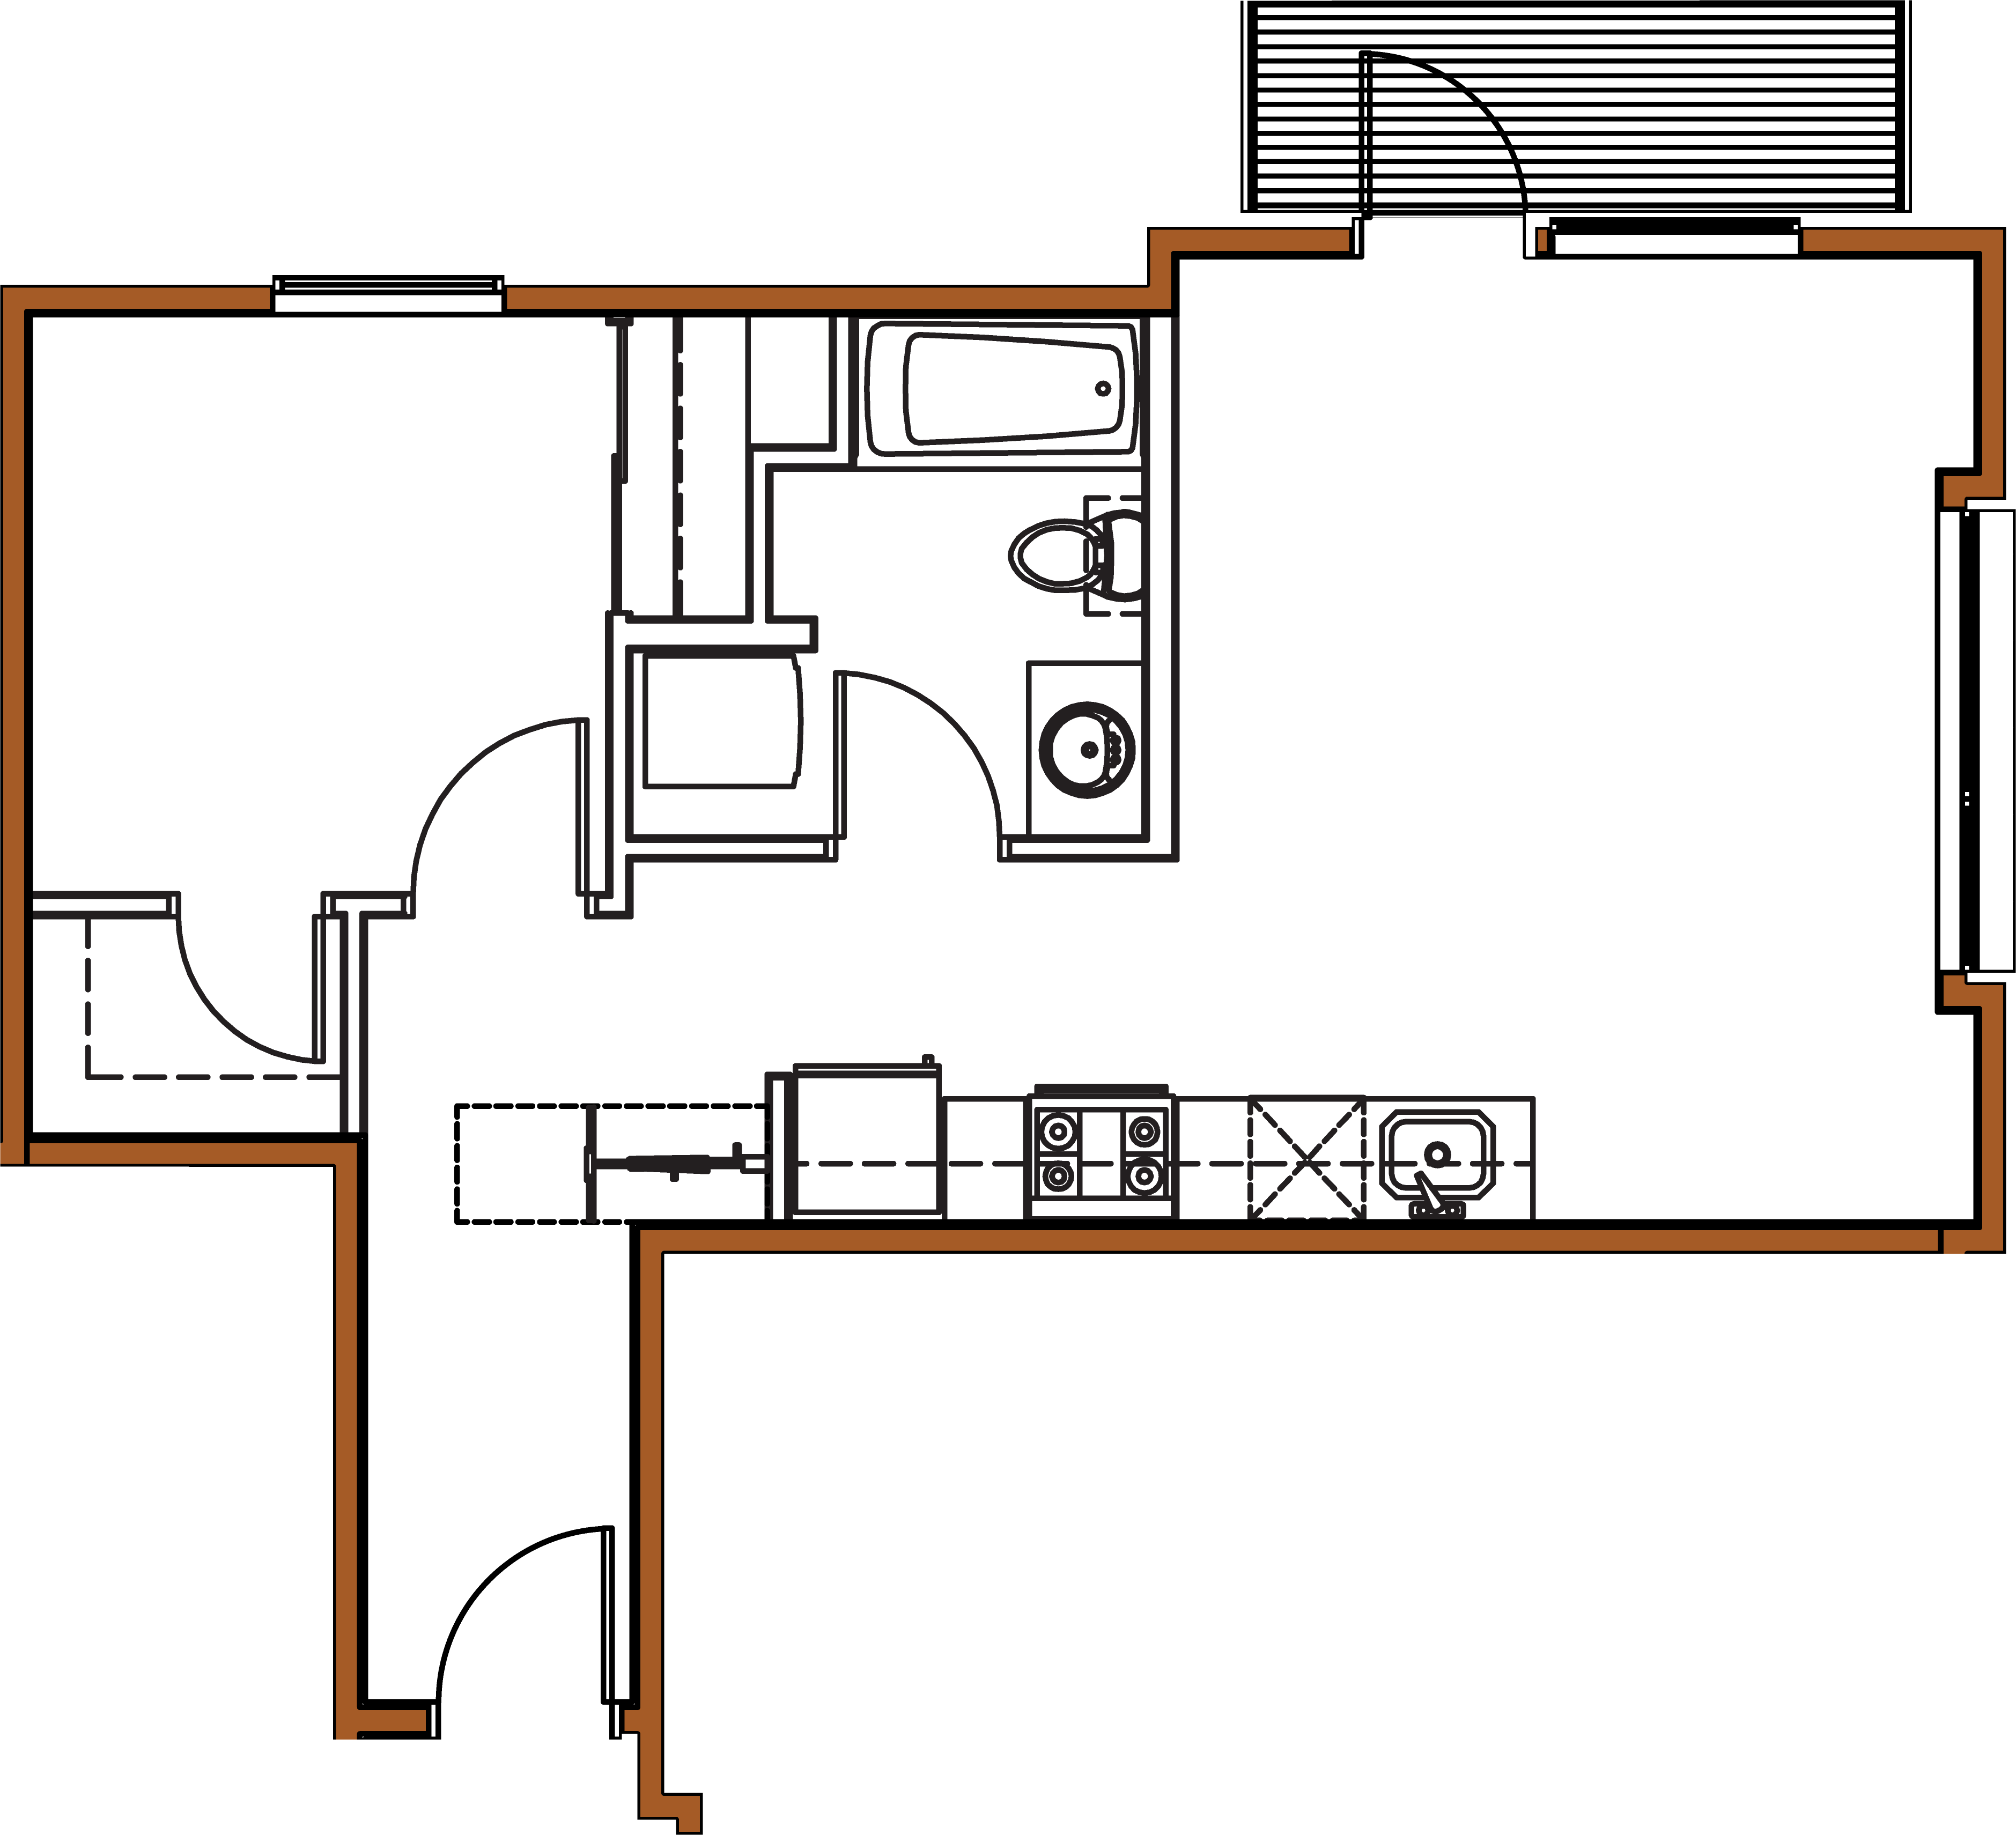 Ankeny Street, 1 bedroom, Galley - Floorplan.png